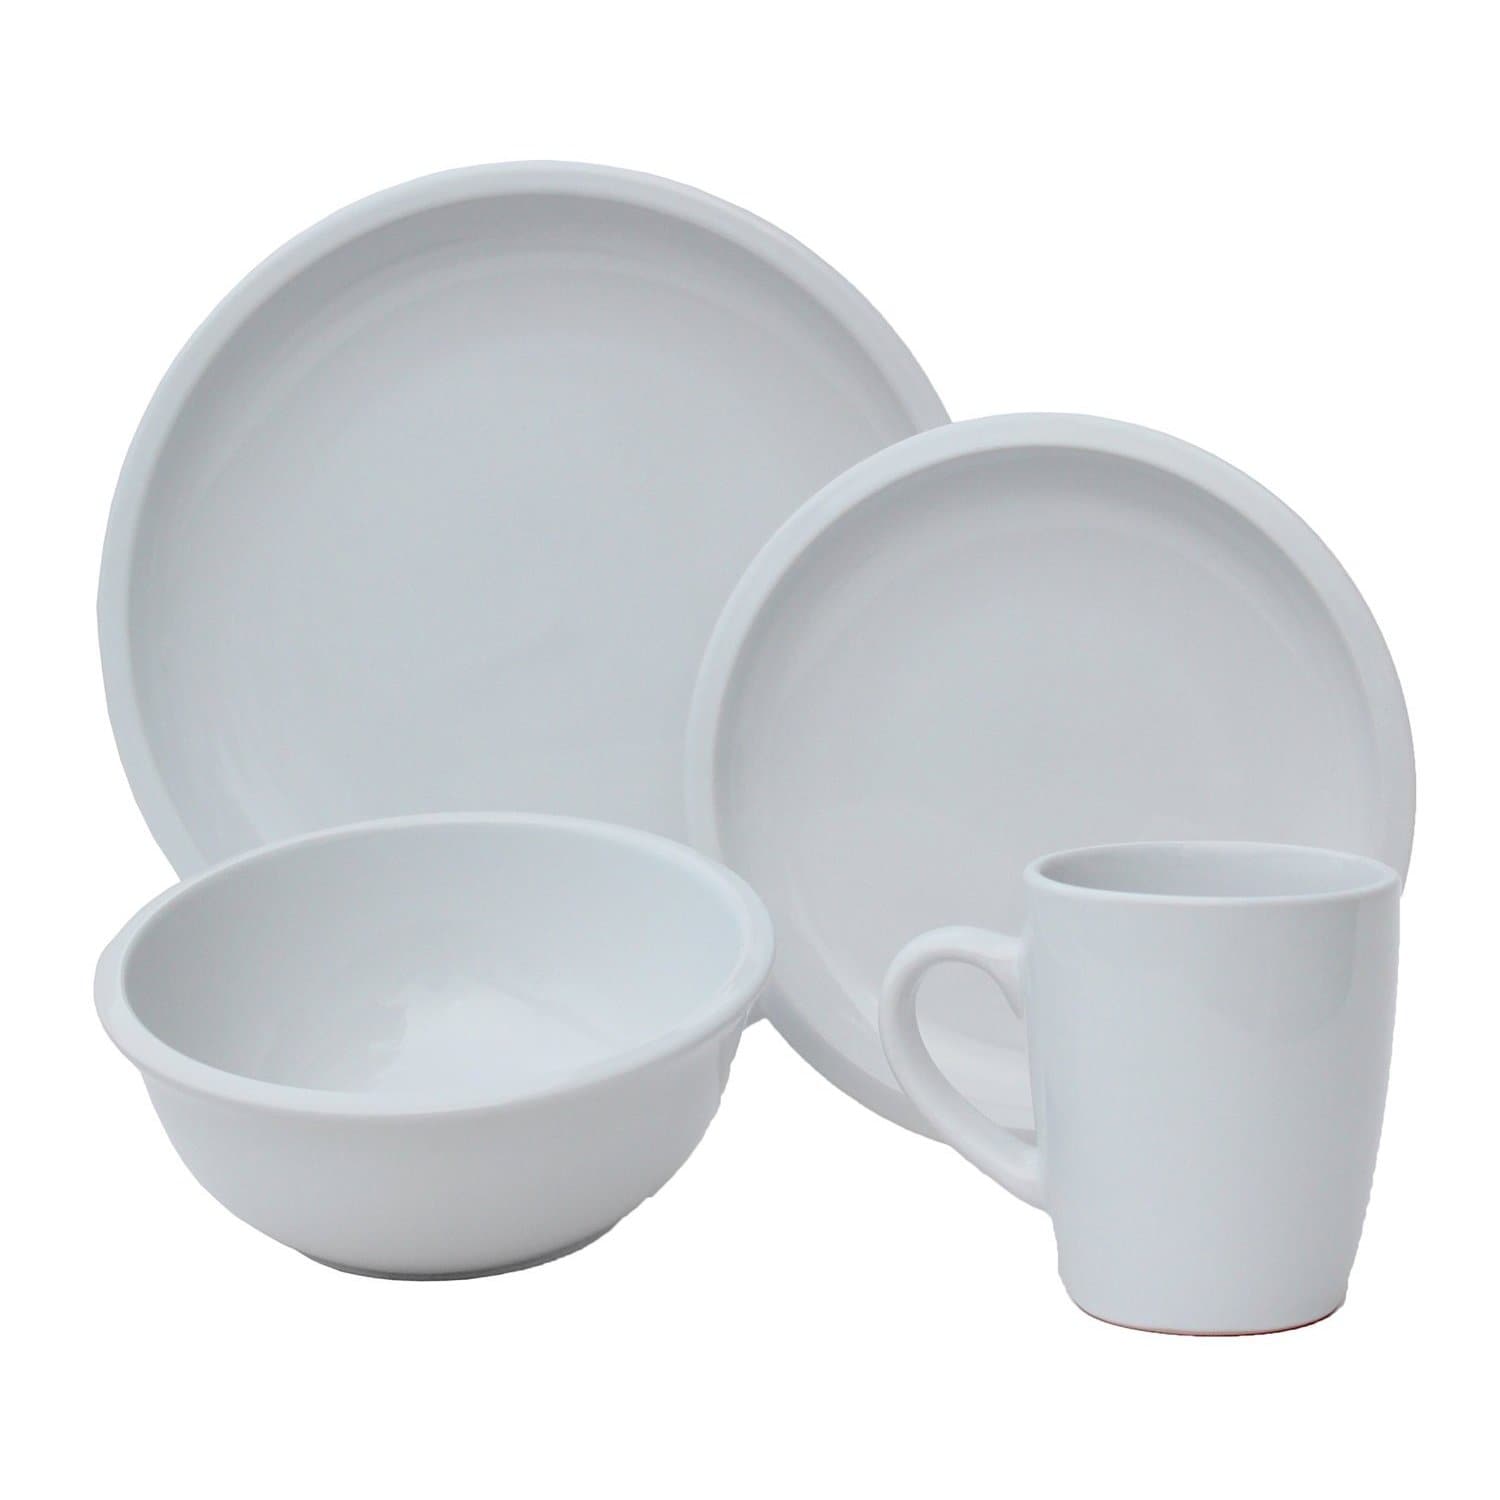 White casual dinnerware set. 